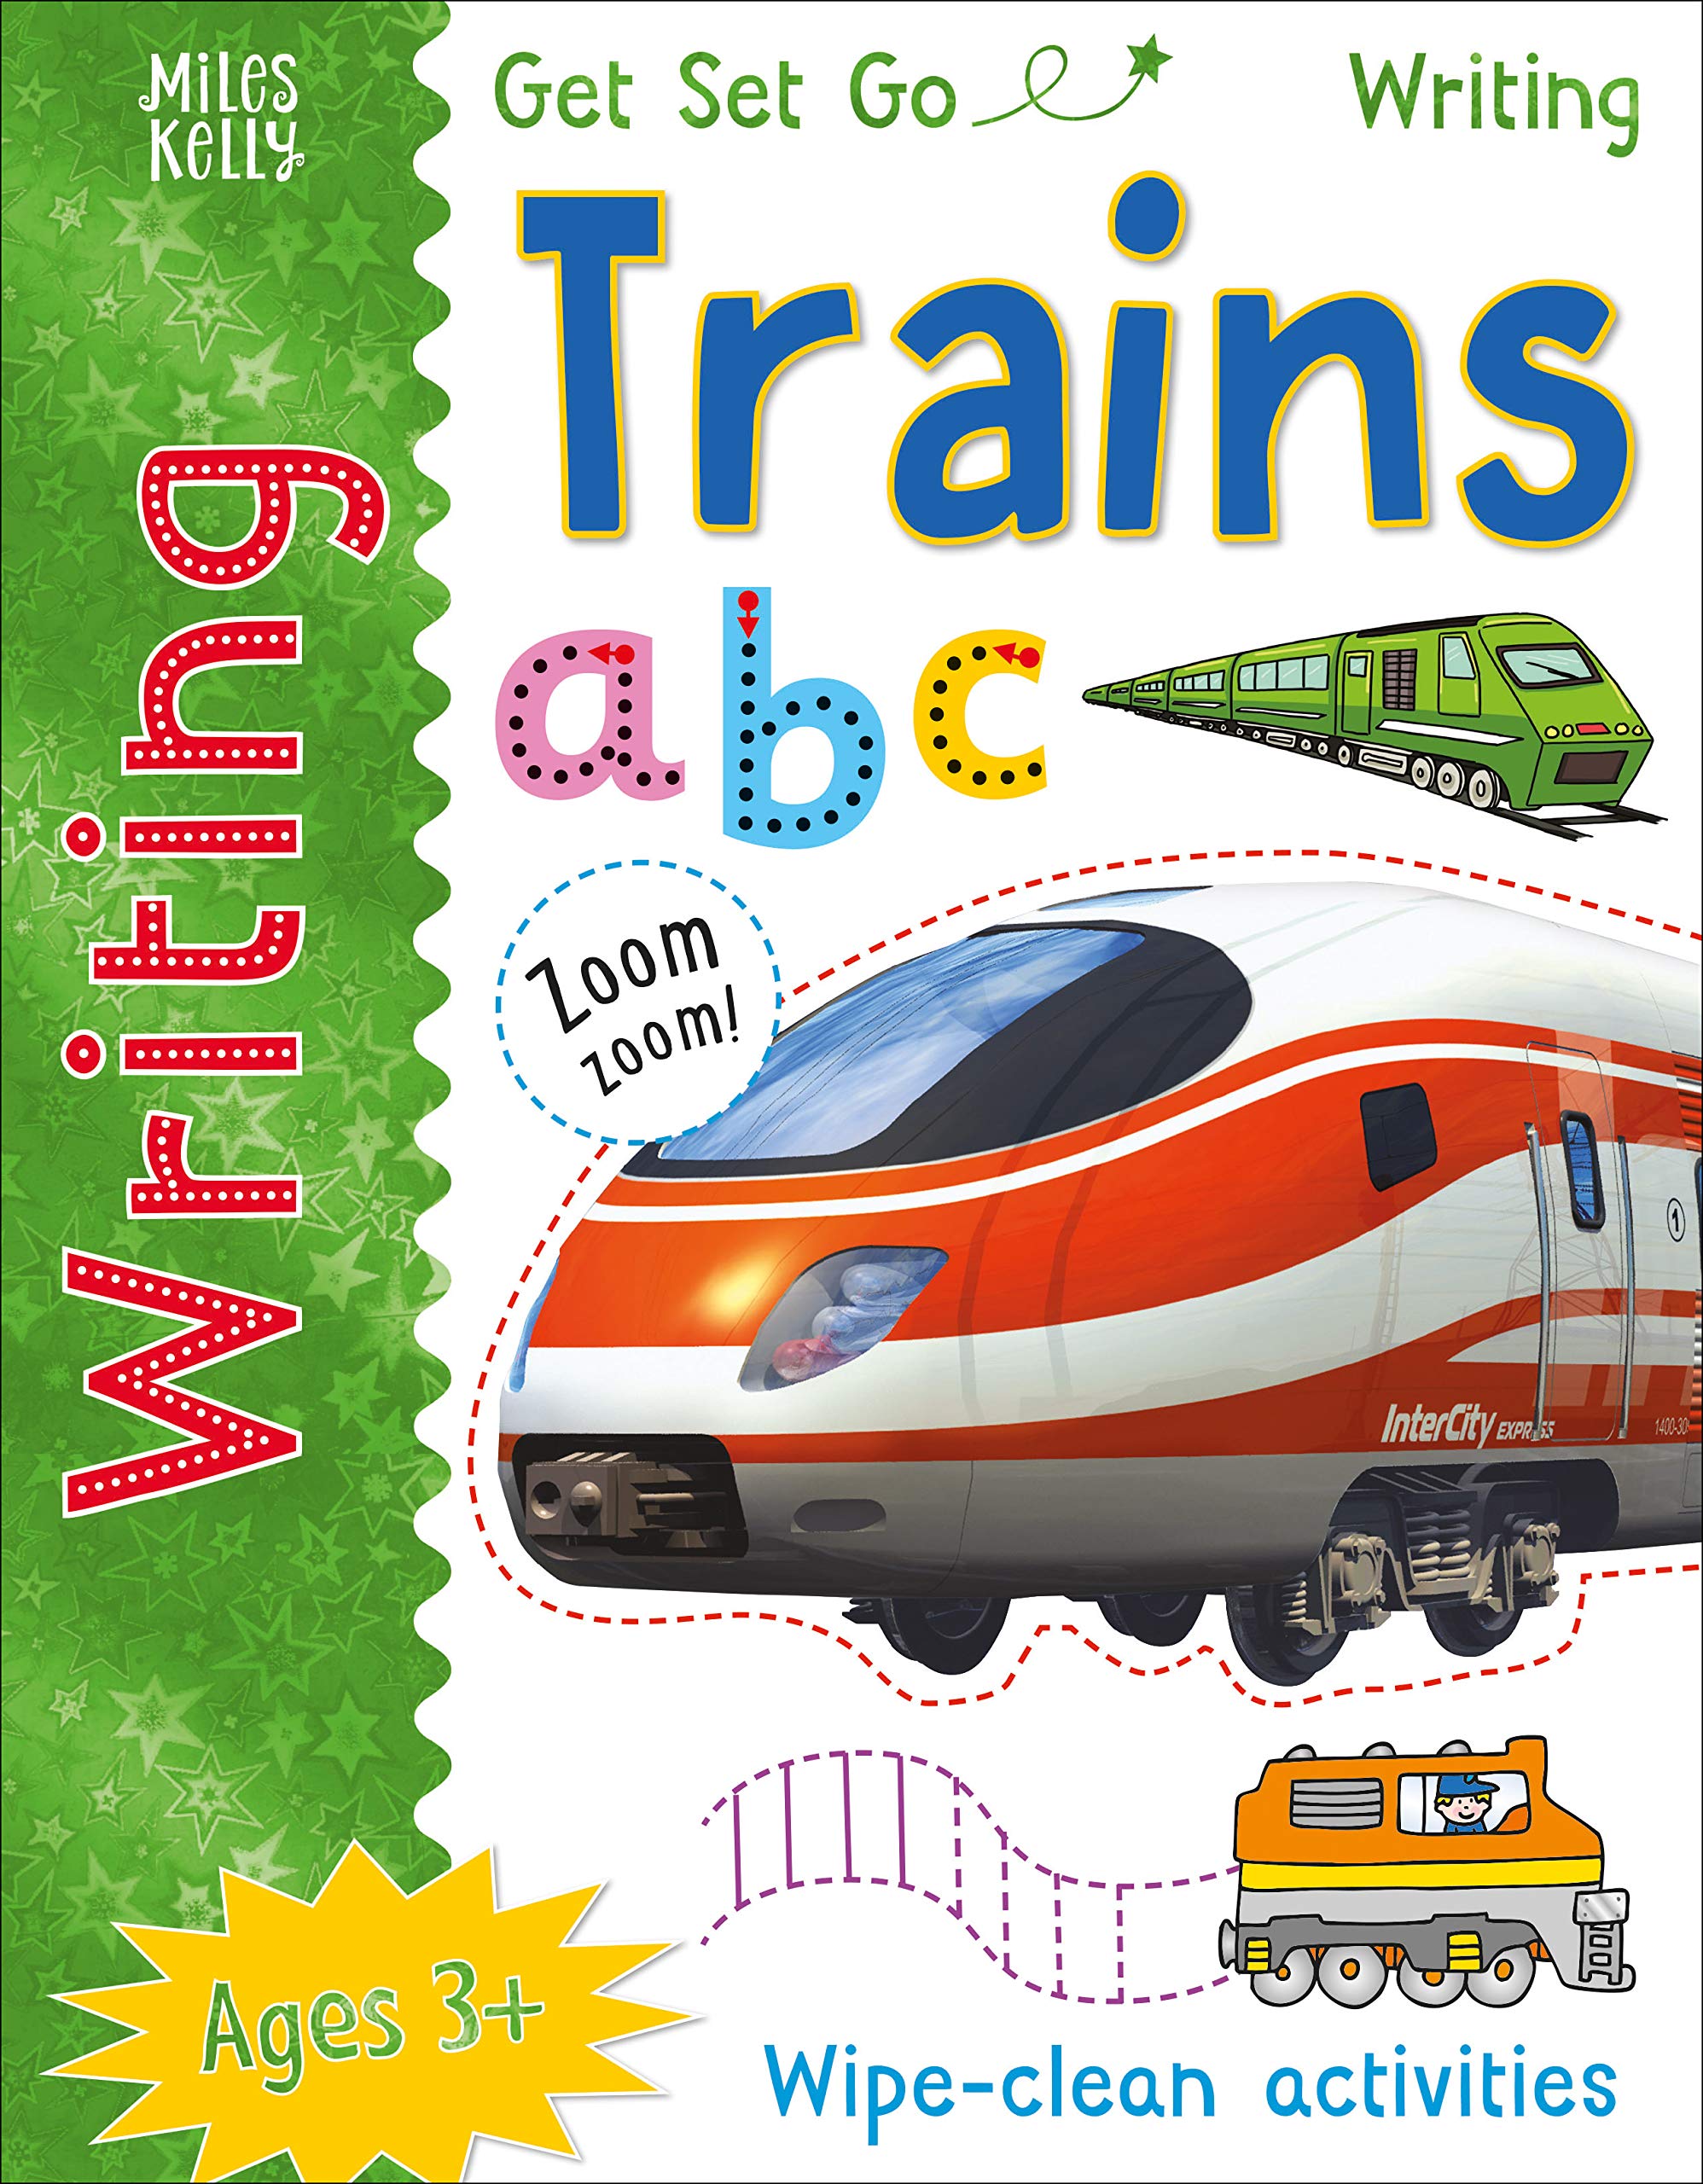 GSG Writing Trains (Get Set Go Writing)